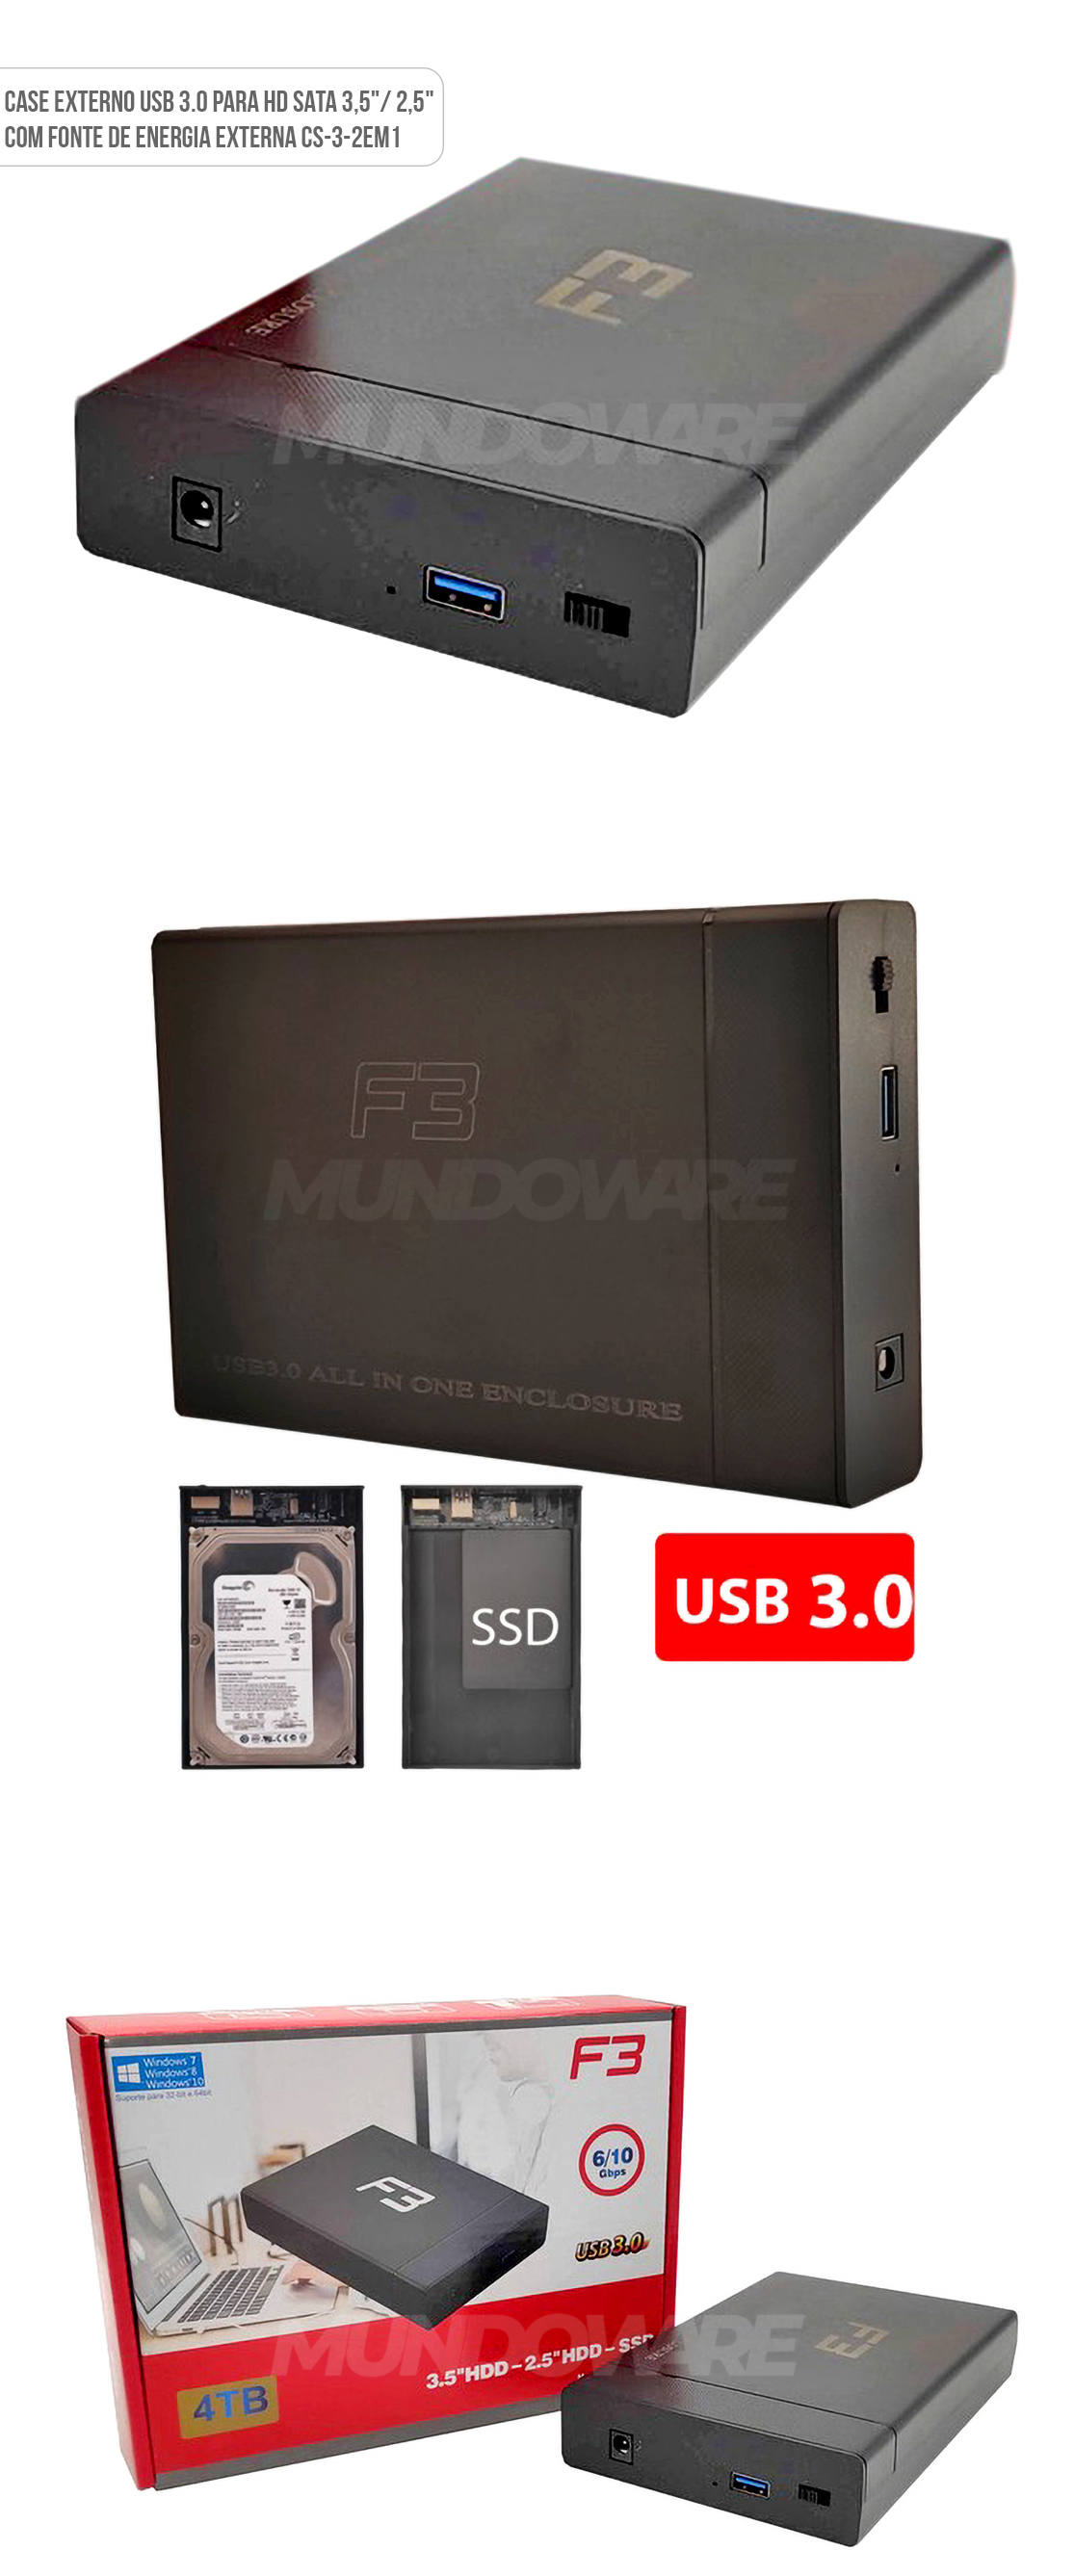 Case Externo USB 3.0 para HD SATA 3.5 e 2.5 até 4TB com Fonte Externa CS-3-2EM1